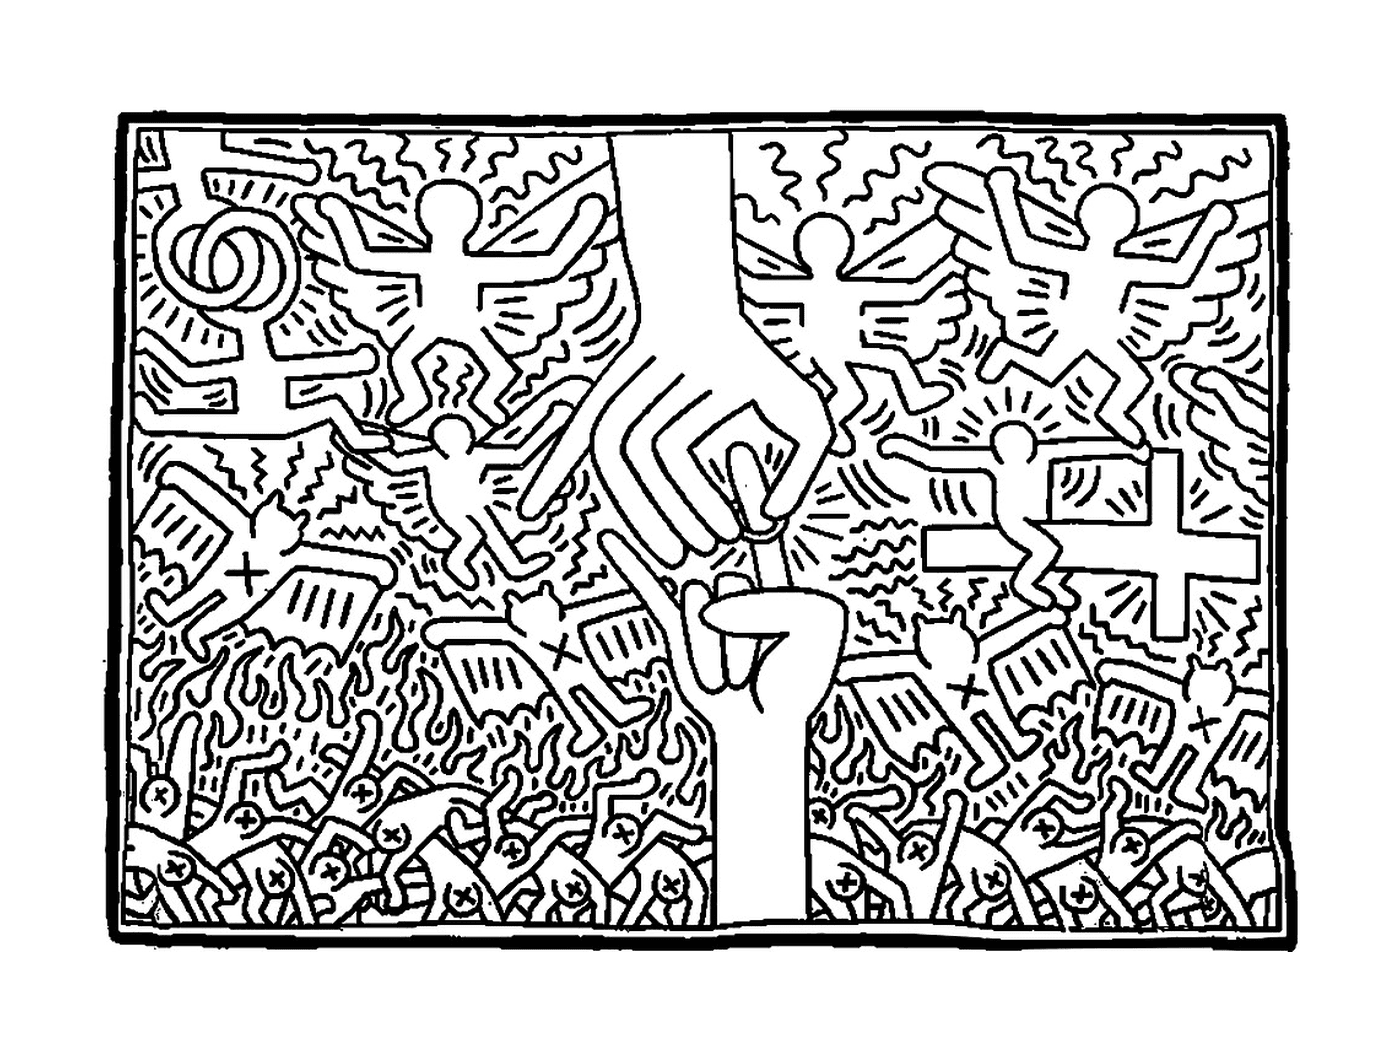  eine Hand, die versucht, ein Zeichen des Friedens in Keith Harings Stil zu fangen 